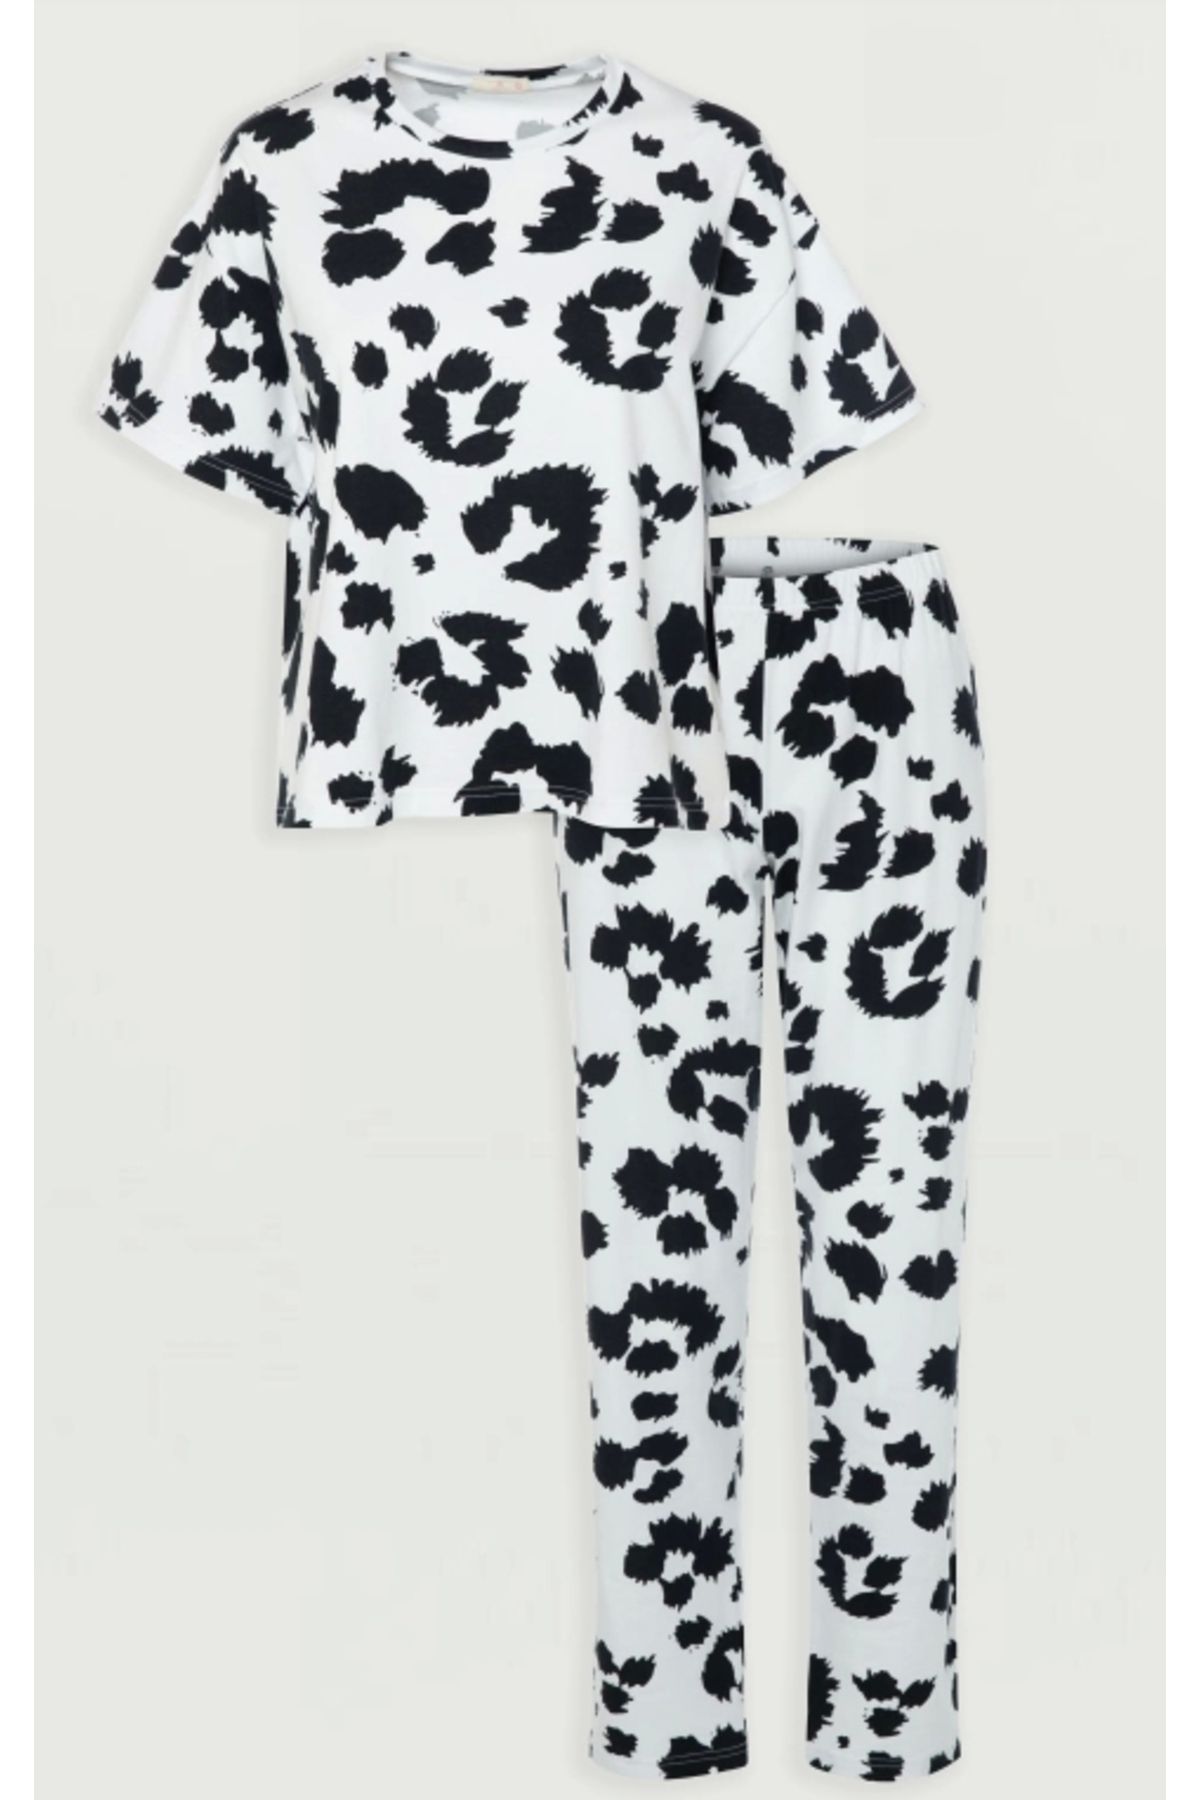 Koza Siyah Yaprak Desenli Kısa Kol Kadın Pijama Takımı - 72109